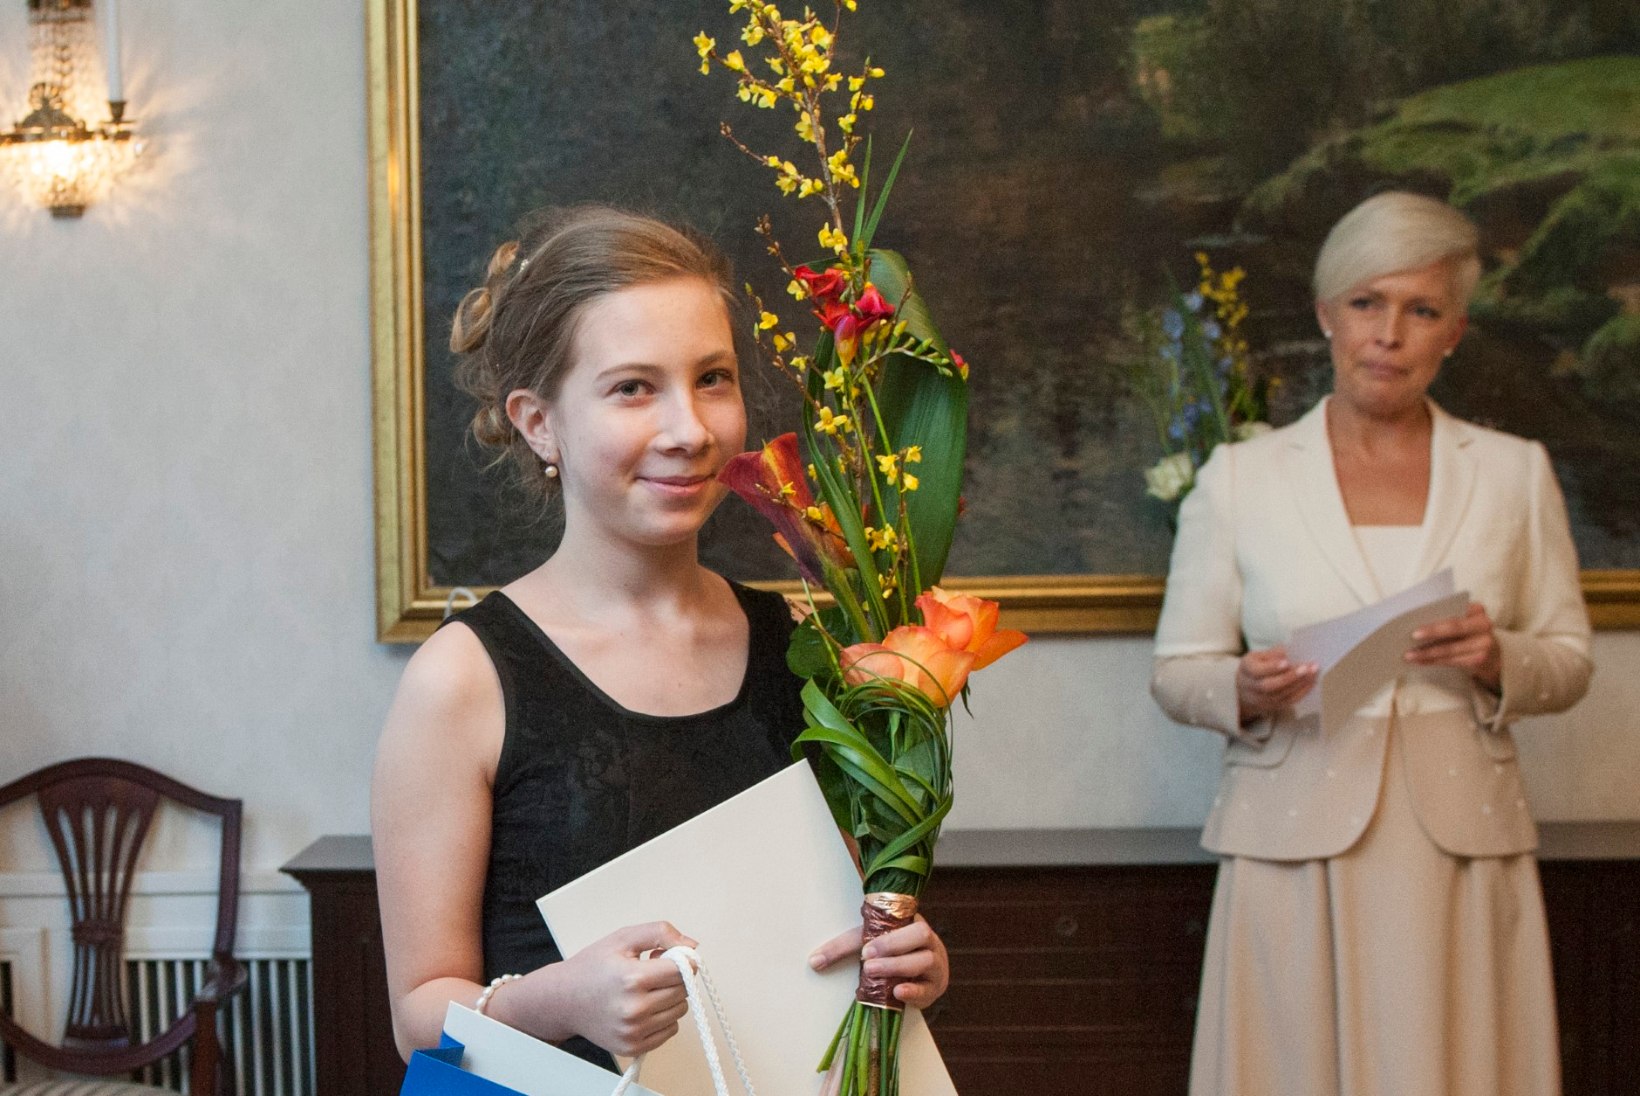 15aastane Mai Narva – juba Eesti meister, sihiks maailma tipp